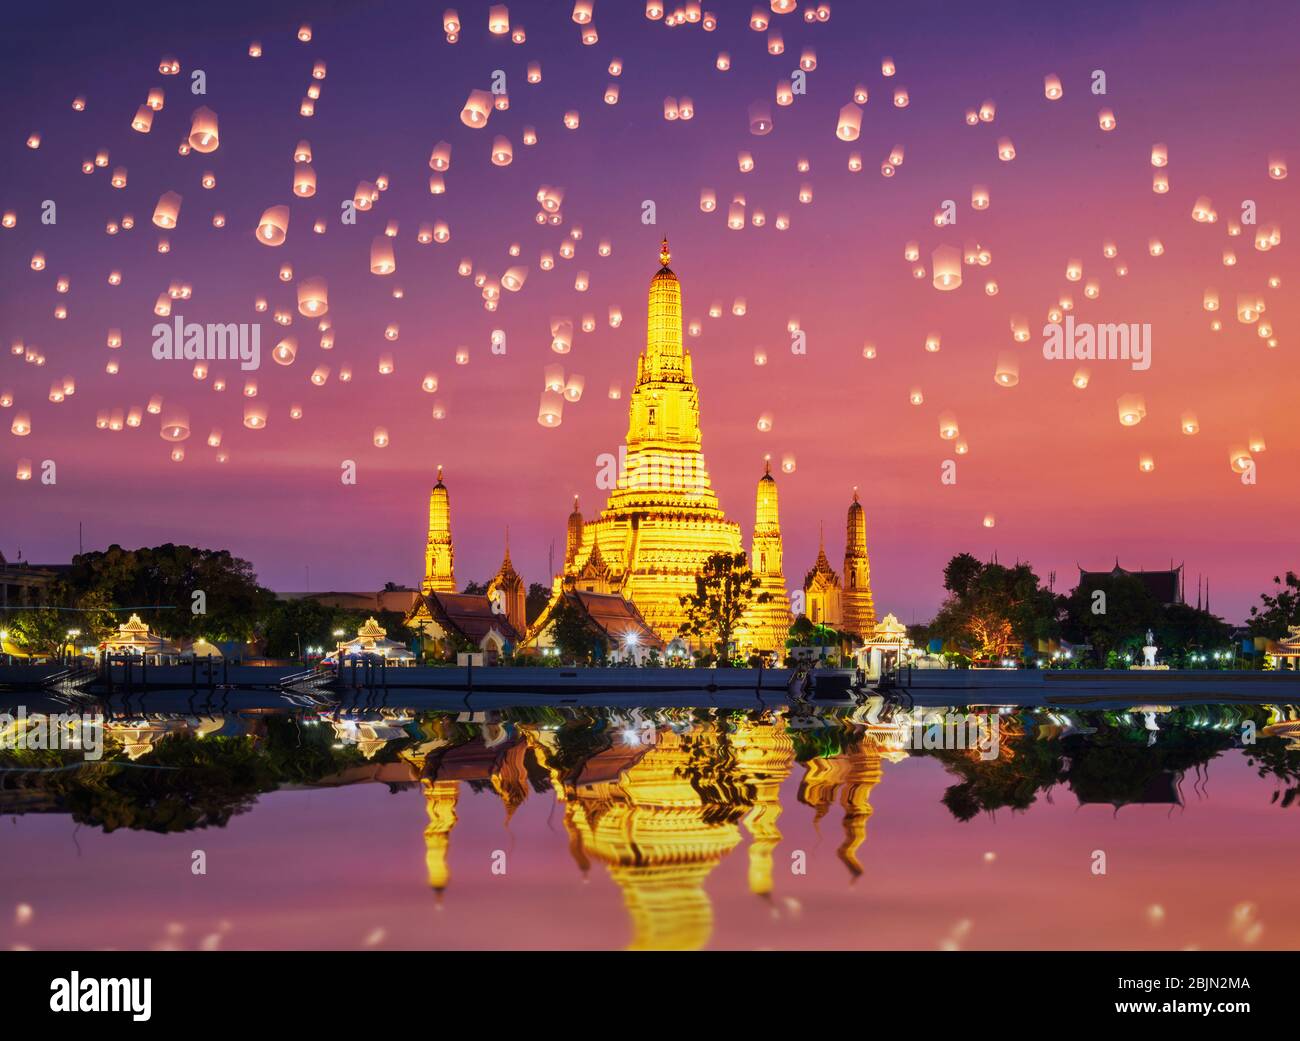 Wat Arun Temple Complex avec des lanternes chinoises dans le ciel au coucher du soleil, Bangkok, Thaïlande Banque D'Images